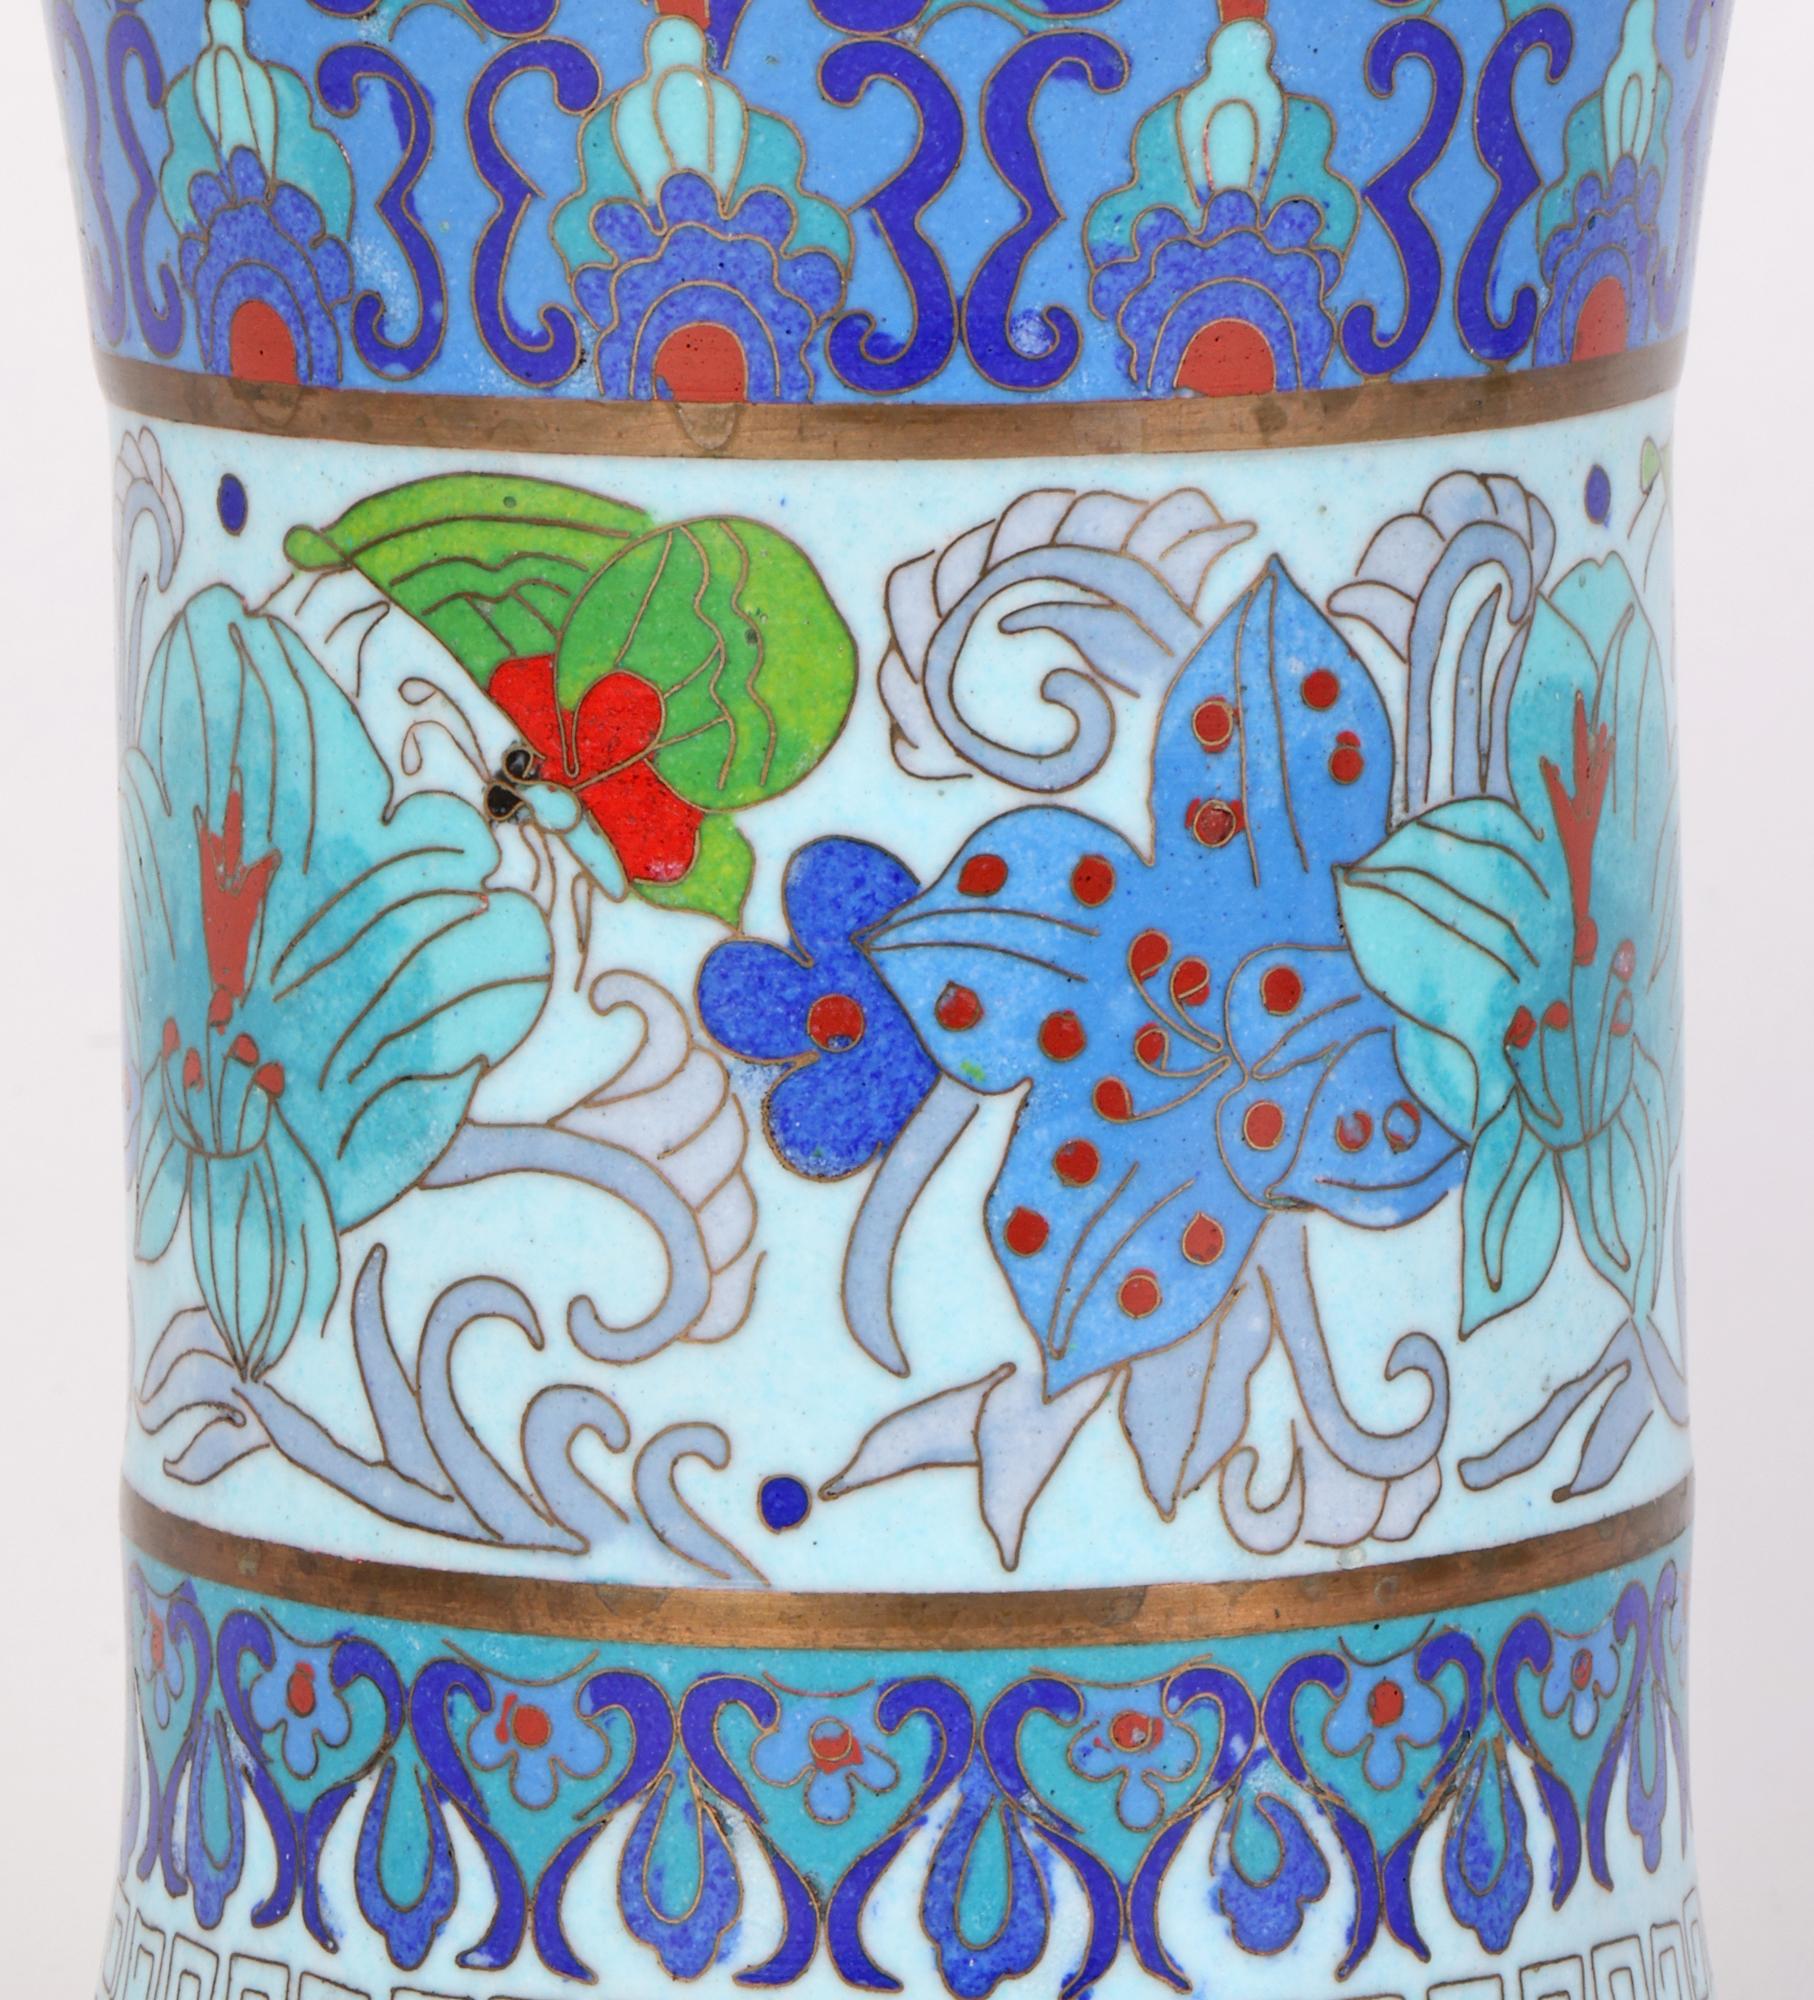 Un élégant vase en cloisonné en forme de trompette, décoré de motifs floraux stylisés et datant du début ou du milieu du 20e siècle. Le vase en métal laiton repose sur une large base ronde légèrement en retrait et est fini dans des émaux bleu